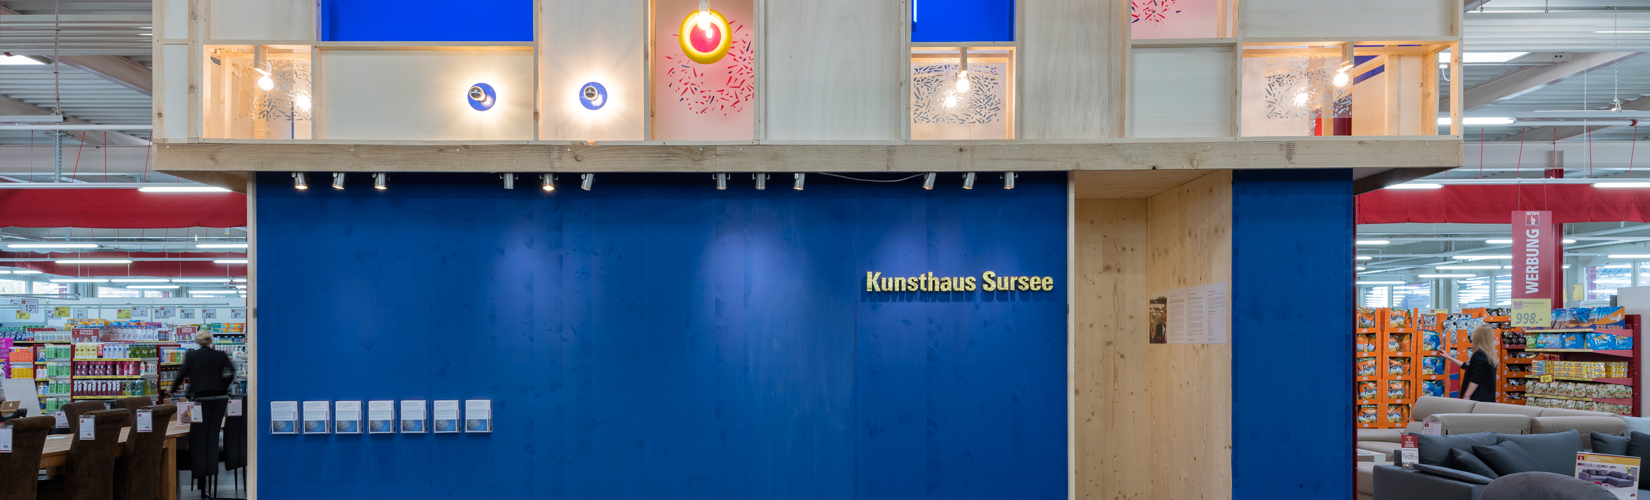 Kunsthaus Sursee